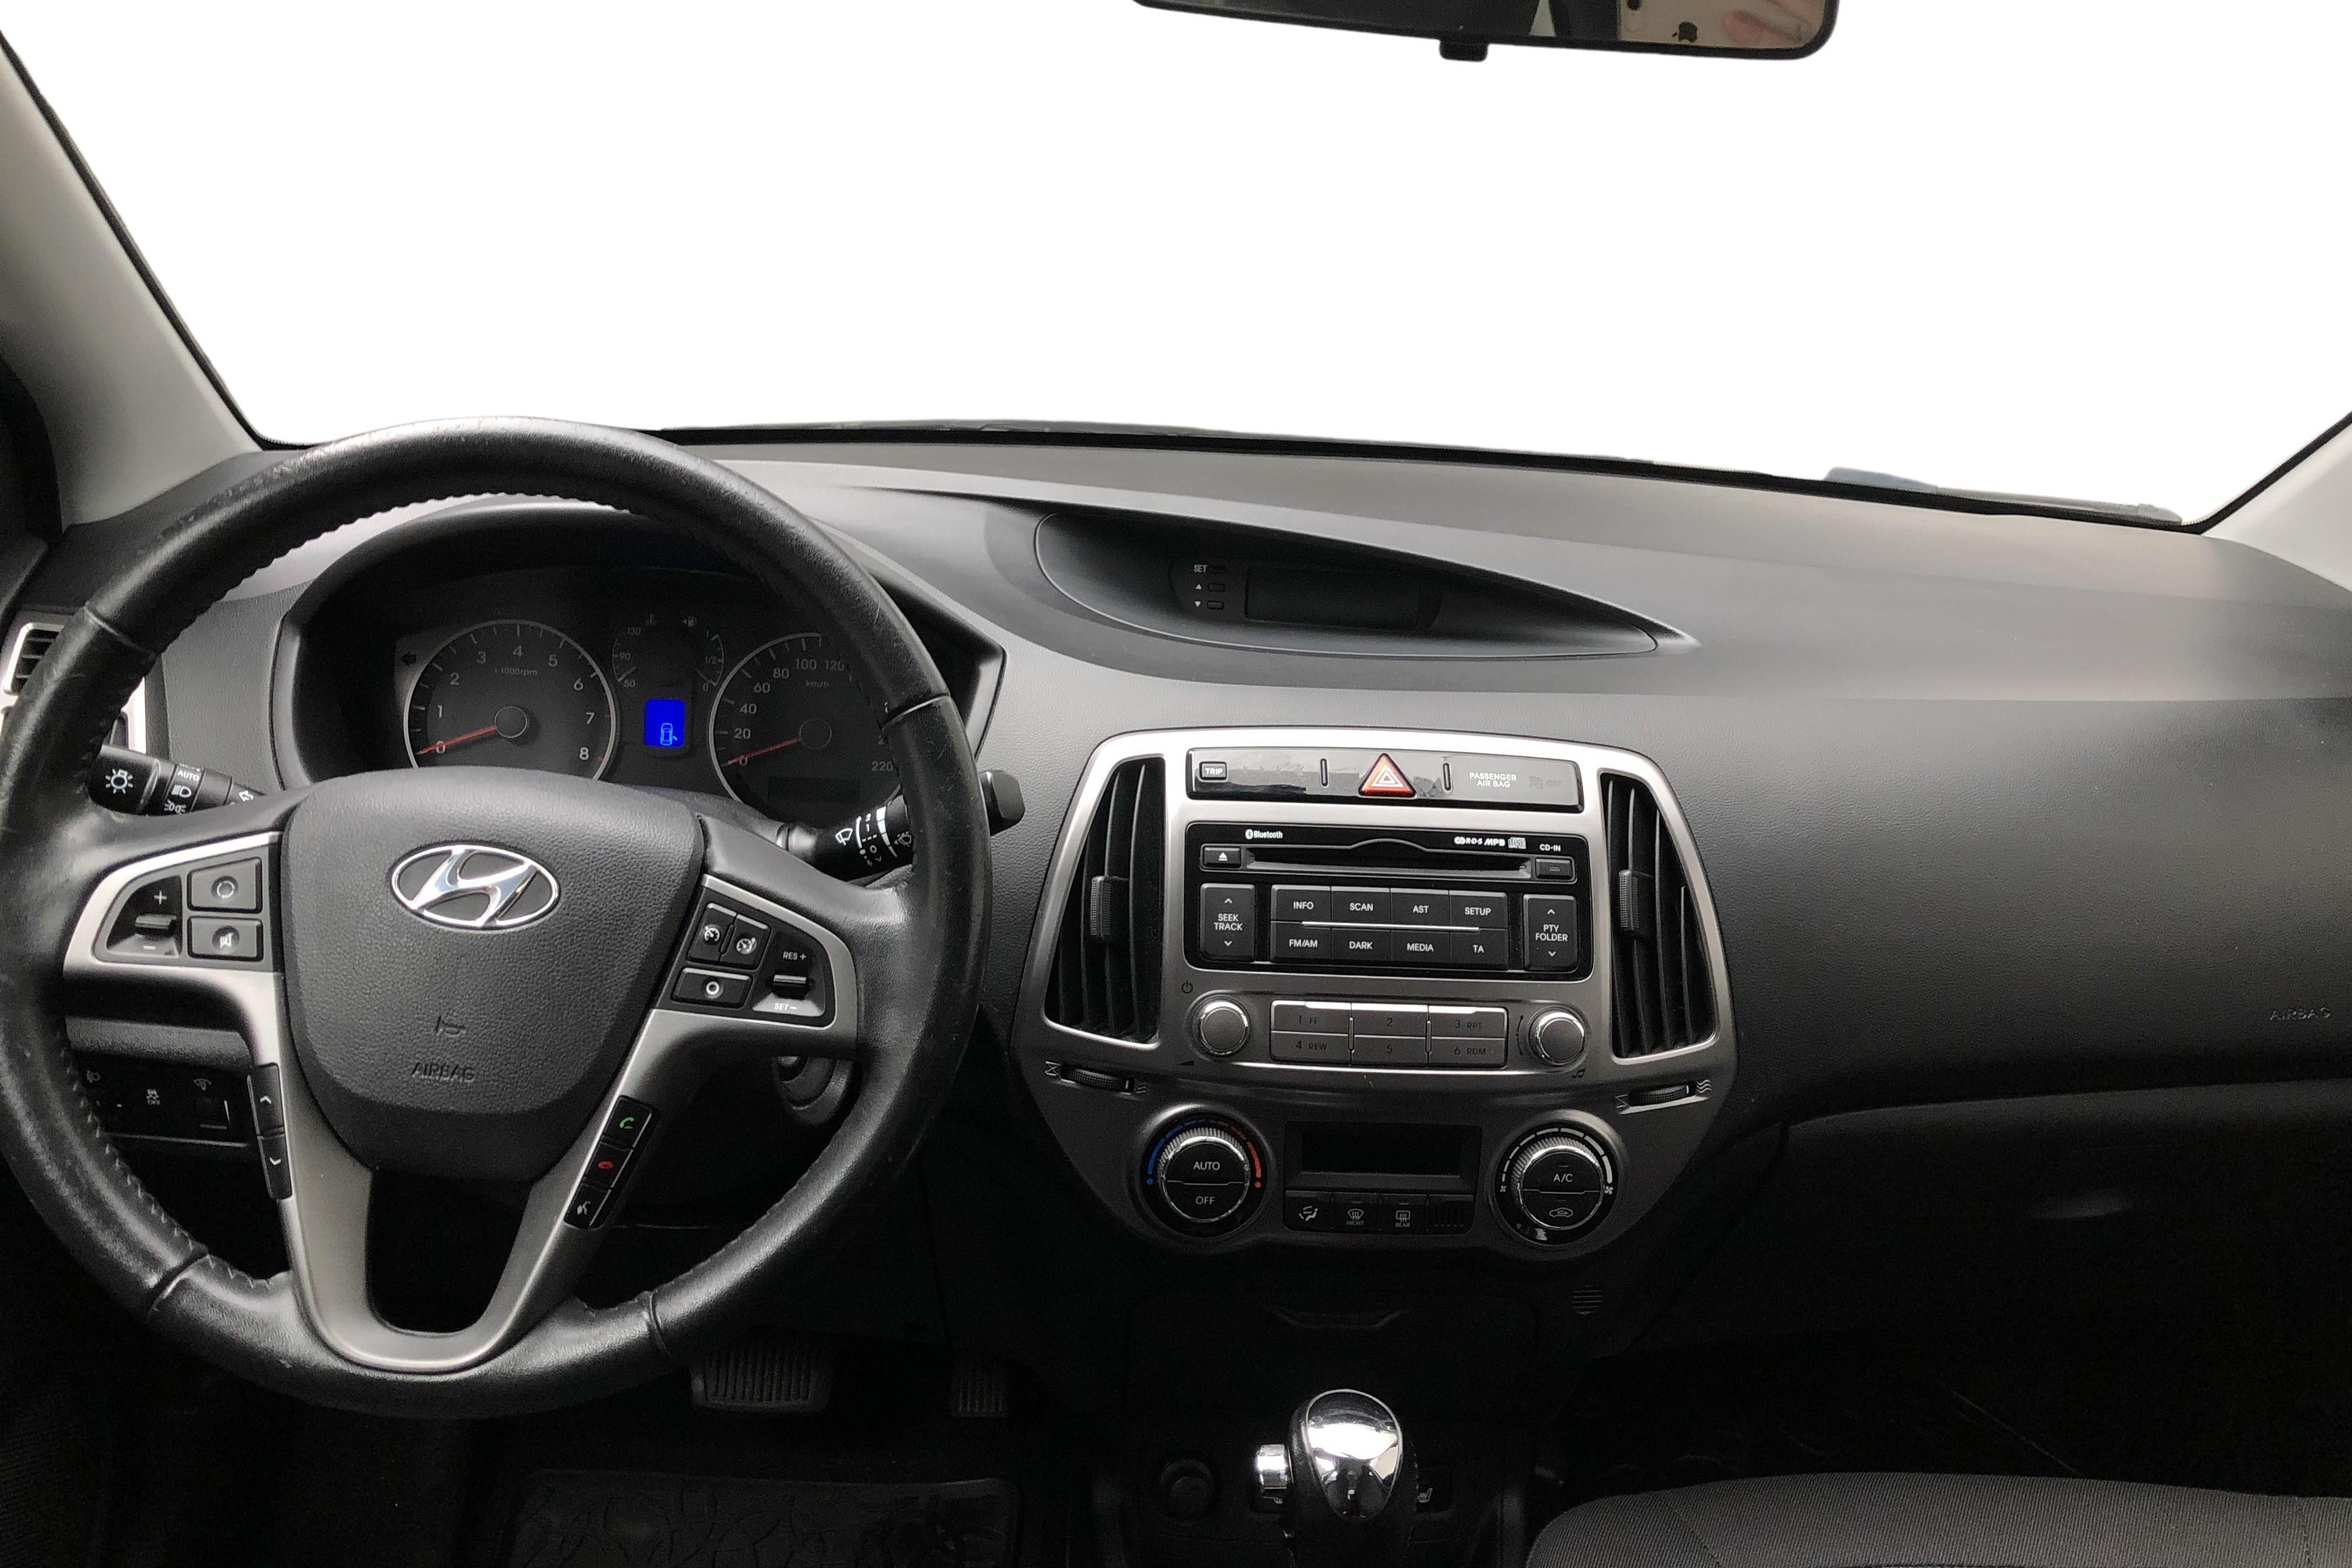 Hyundai i20 1.4 (100hk) - 6 221 mil - Automat - svart - 2013